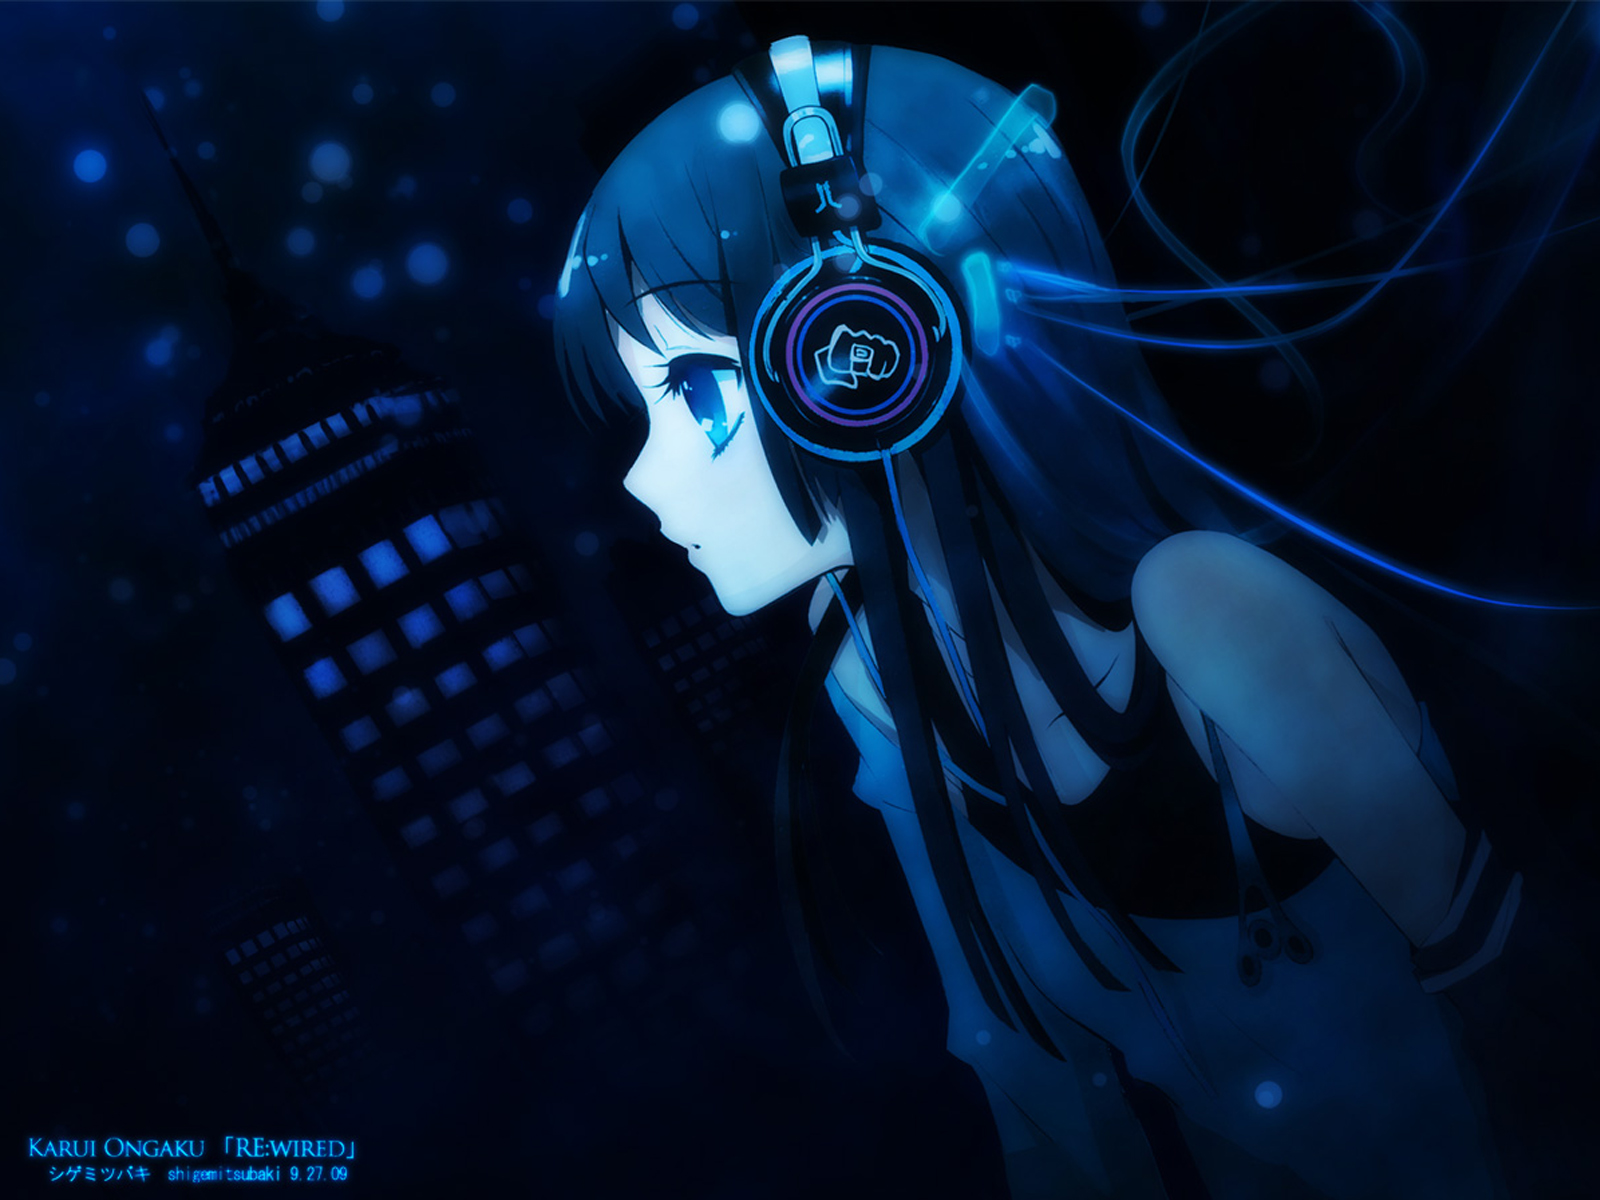 Mio Akiyama wearing headphones, HD desktop wallpaper.